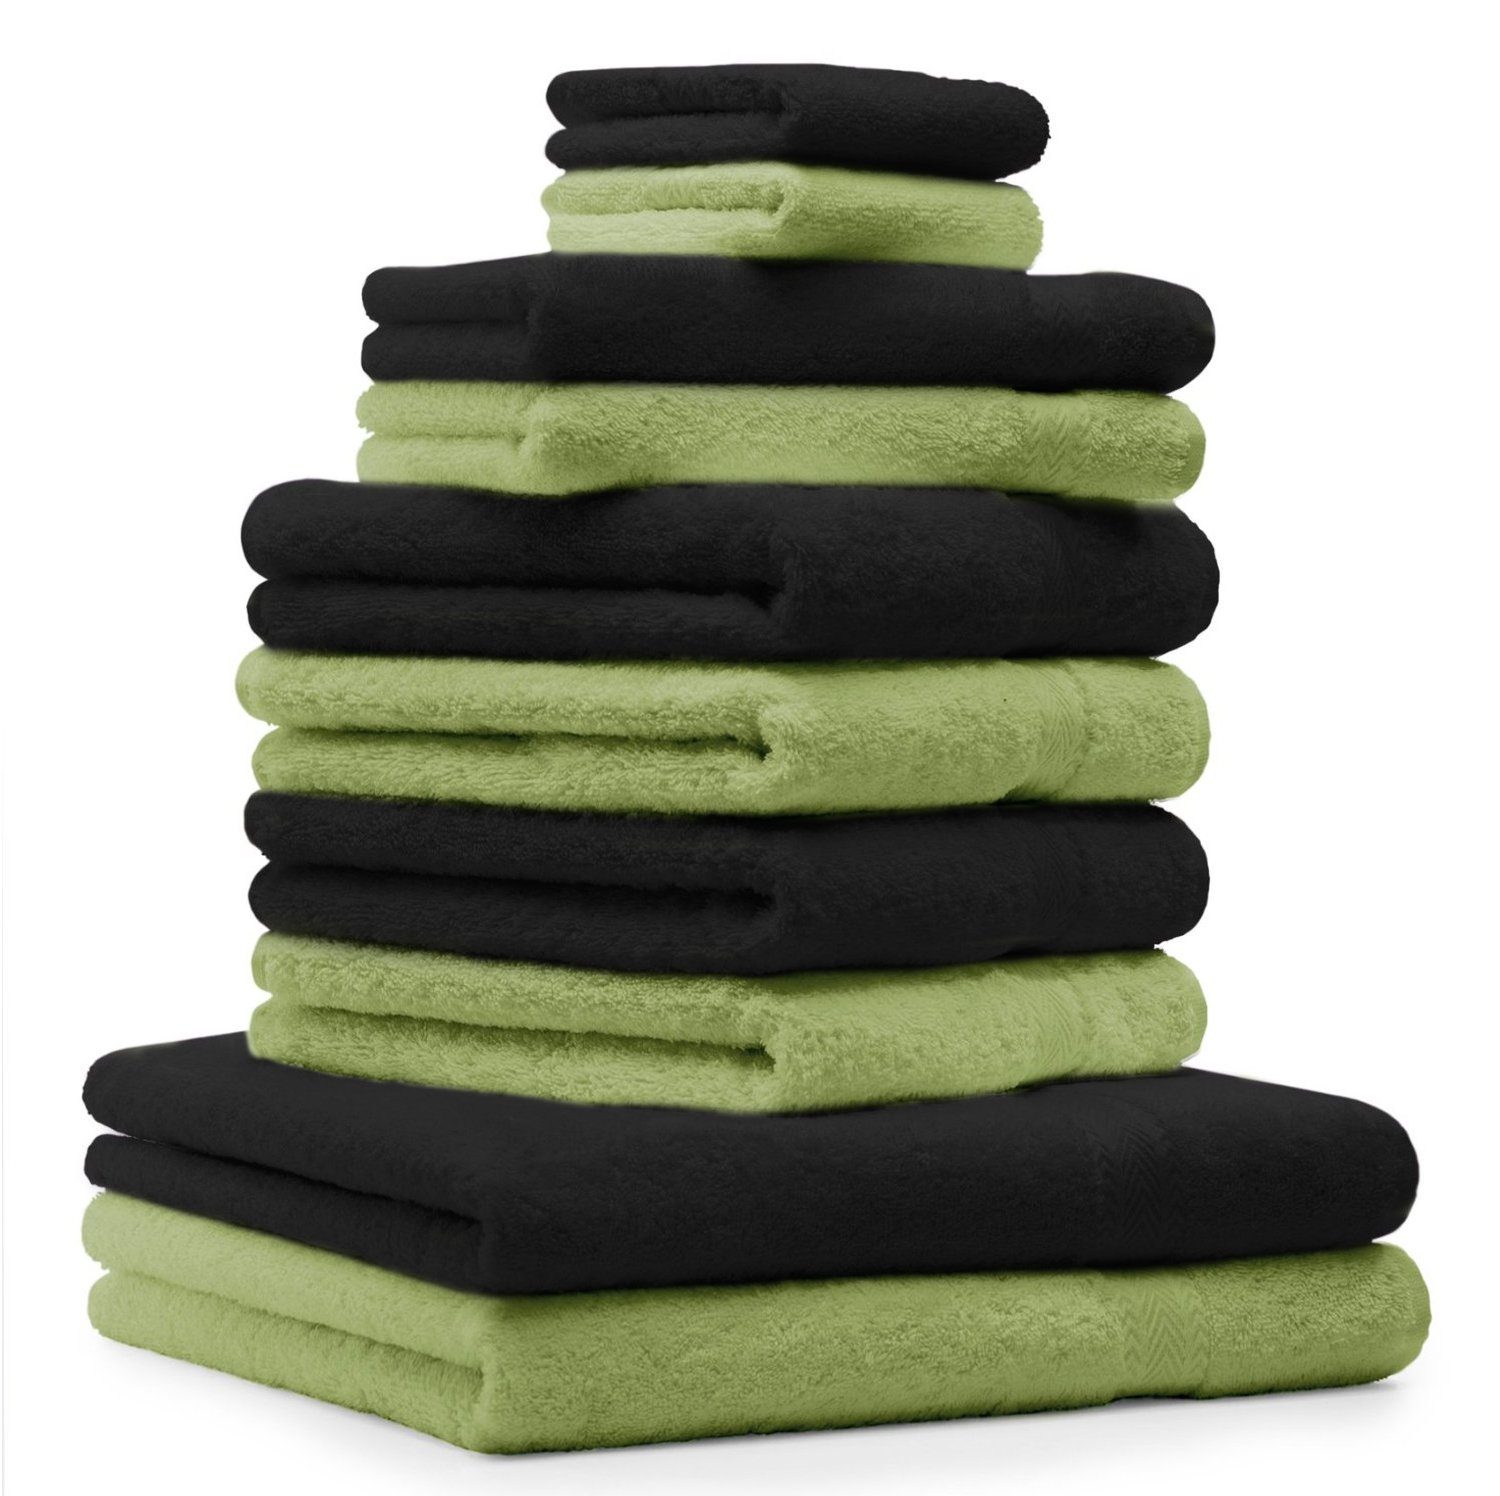 Betz Handtuch Set 10-TLG. Handtuch-Set Classic Farbe apfelgrün und schwarz, 100% Baumwolle